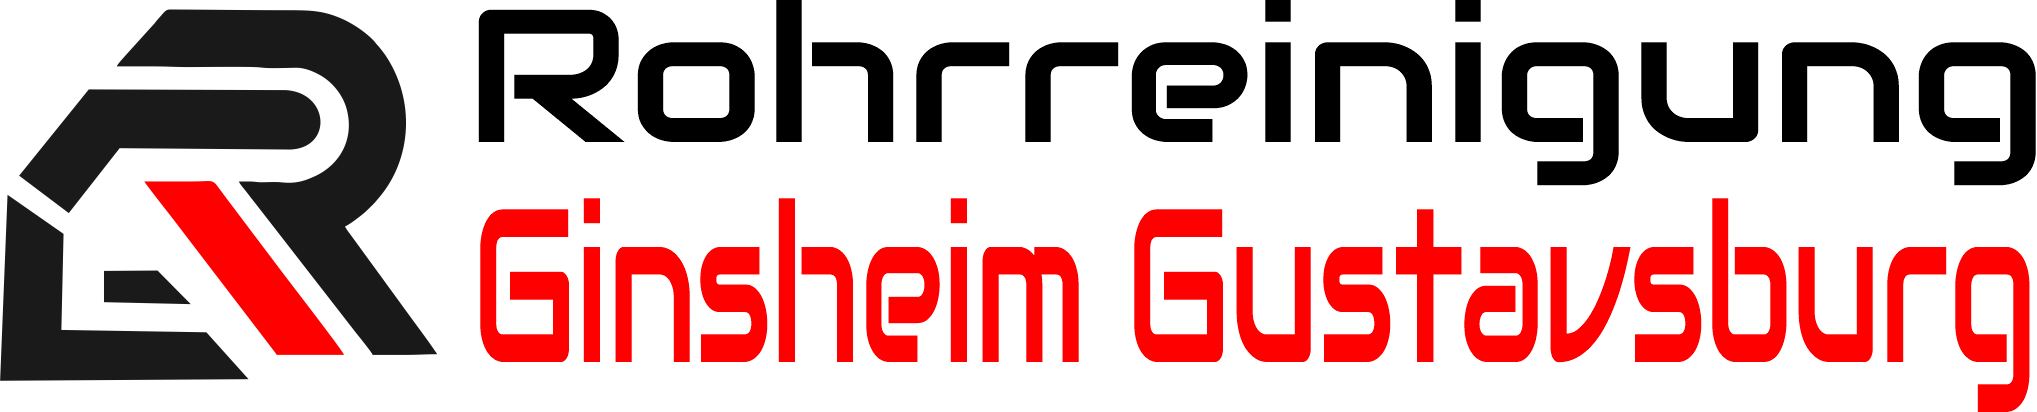 Rohrreinigung Ginsheim Gustavsburg Logo